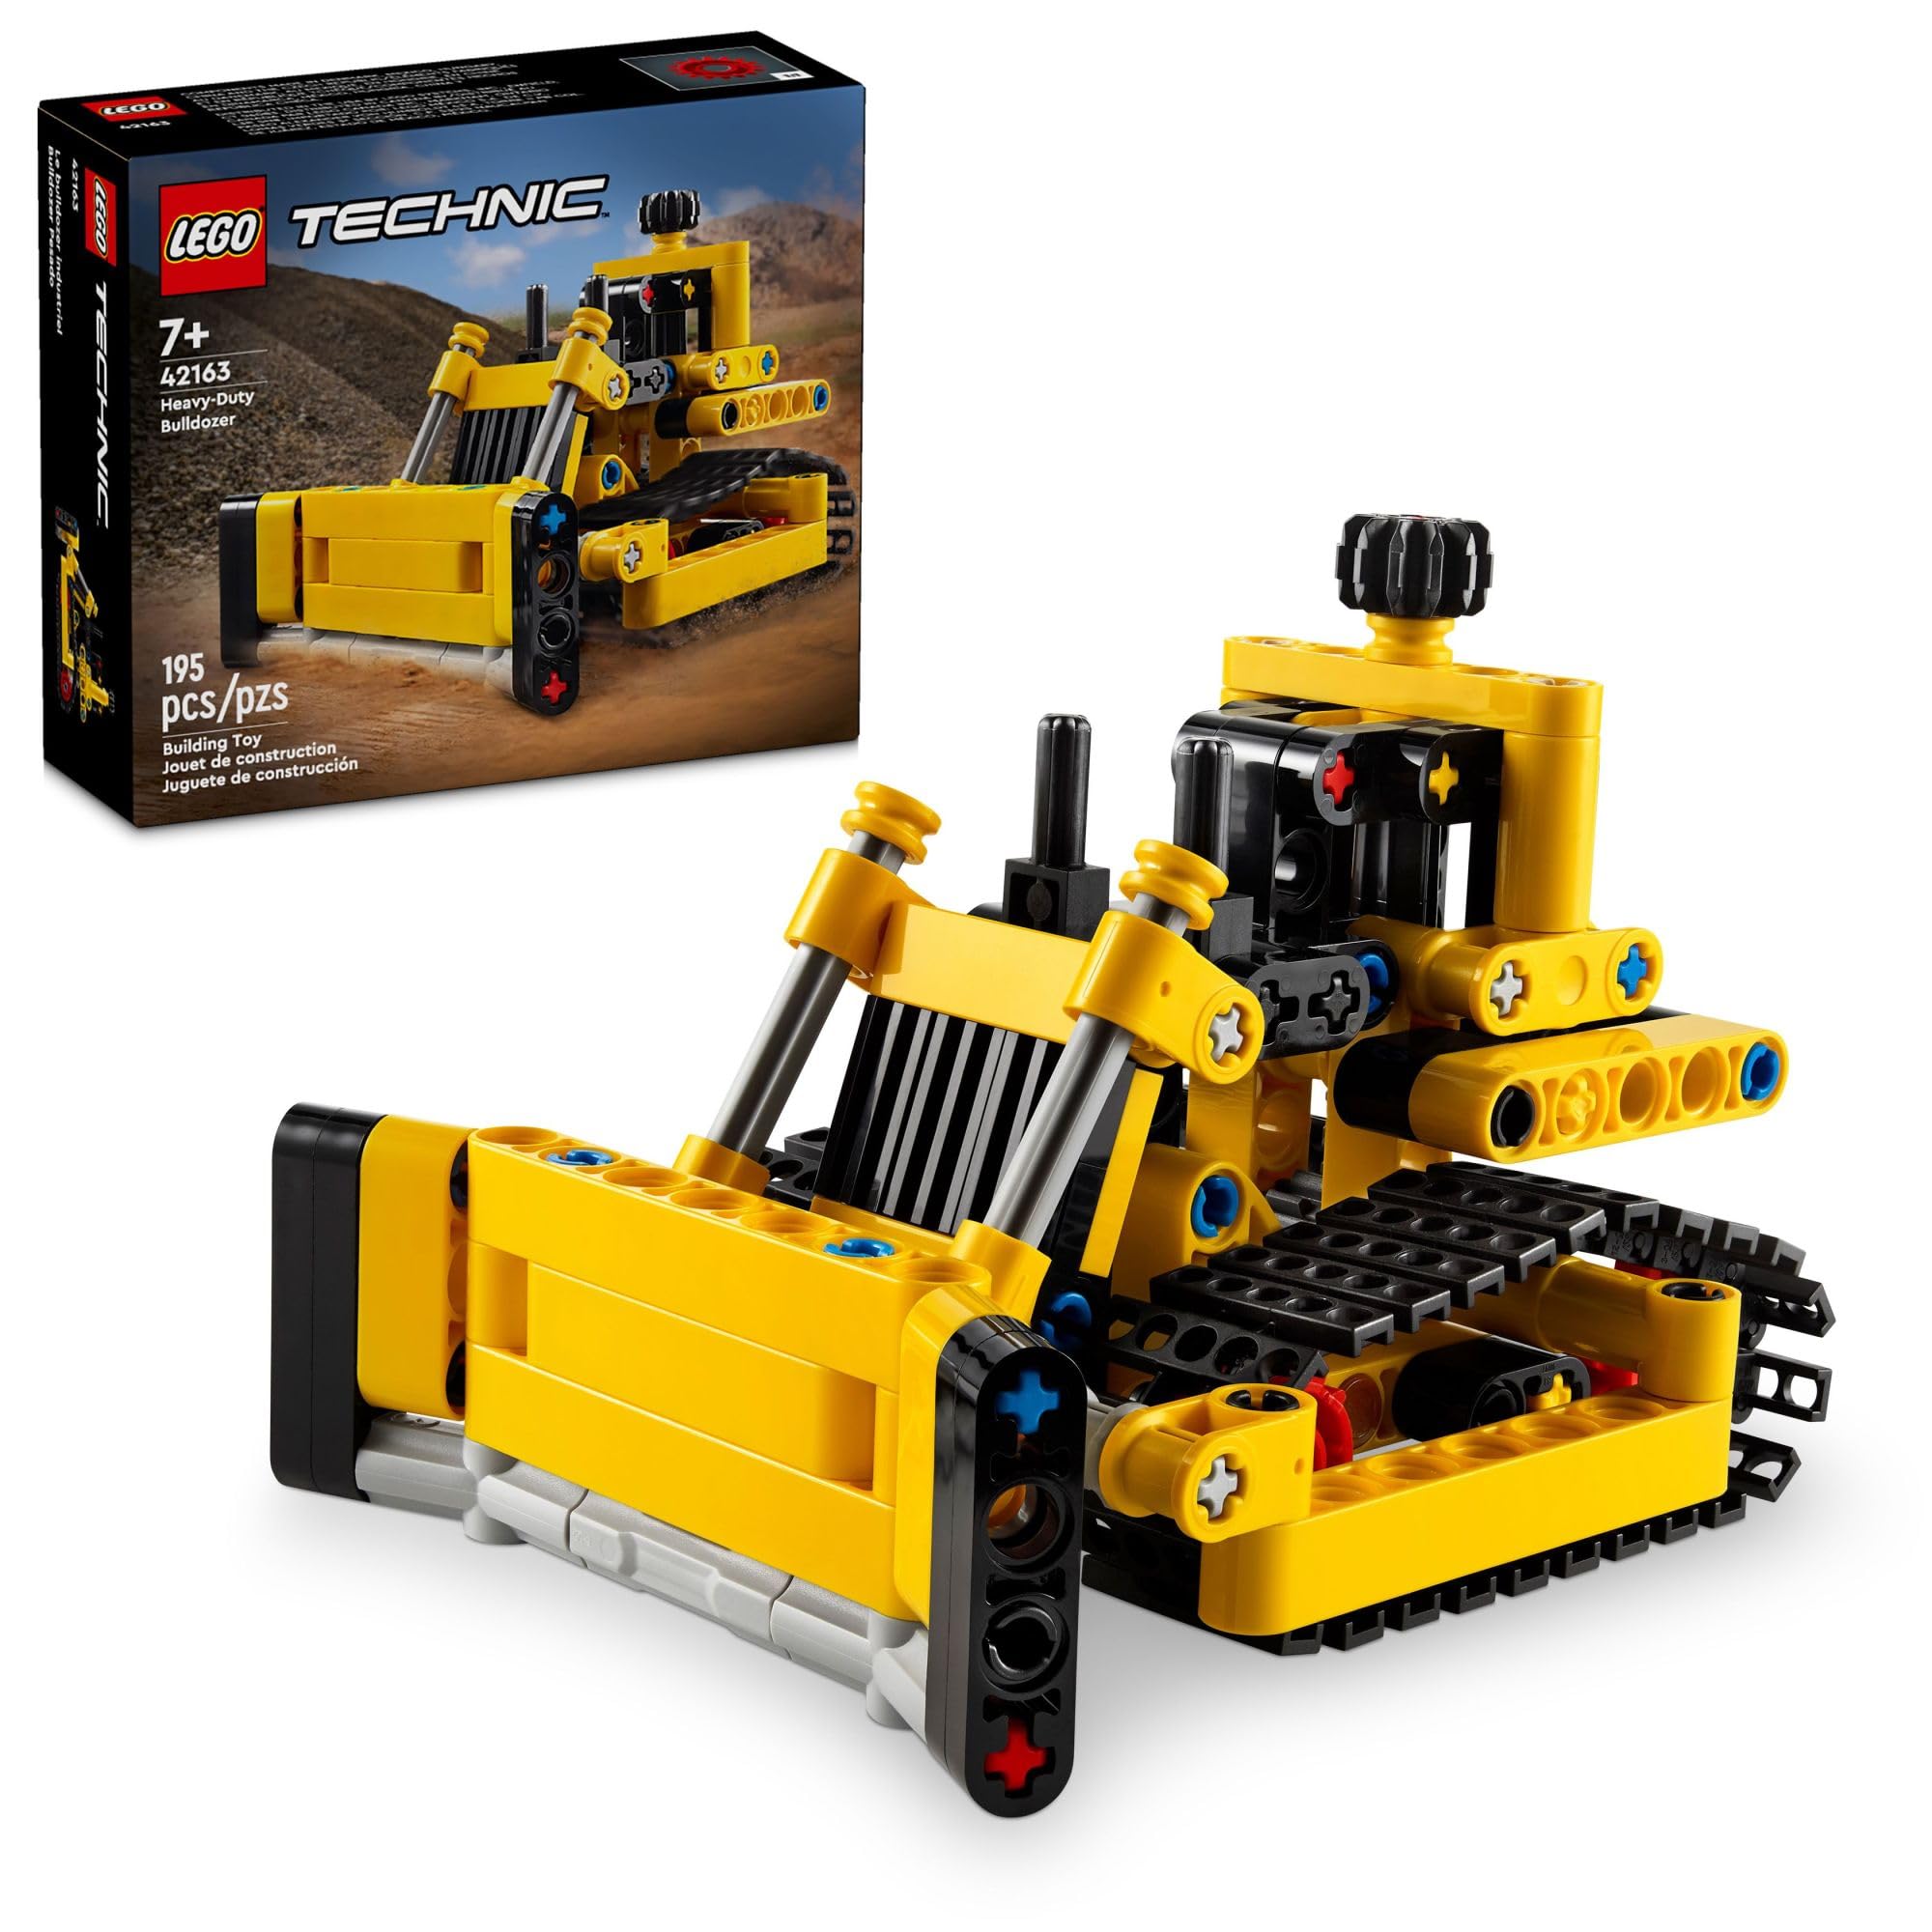 LEGO樂高Technic 機械組42163重型推土機，原價$12.99，現僅售$10.99，免運費！